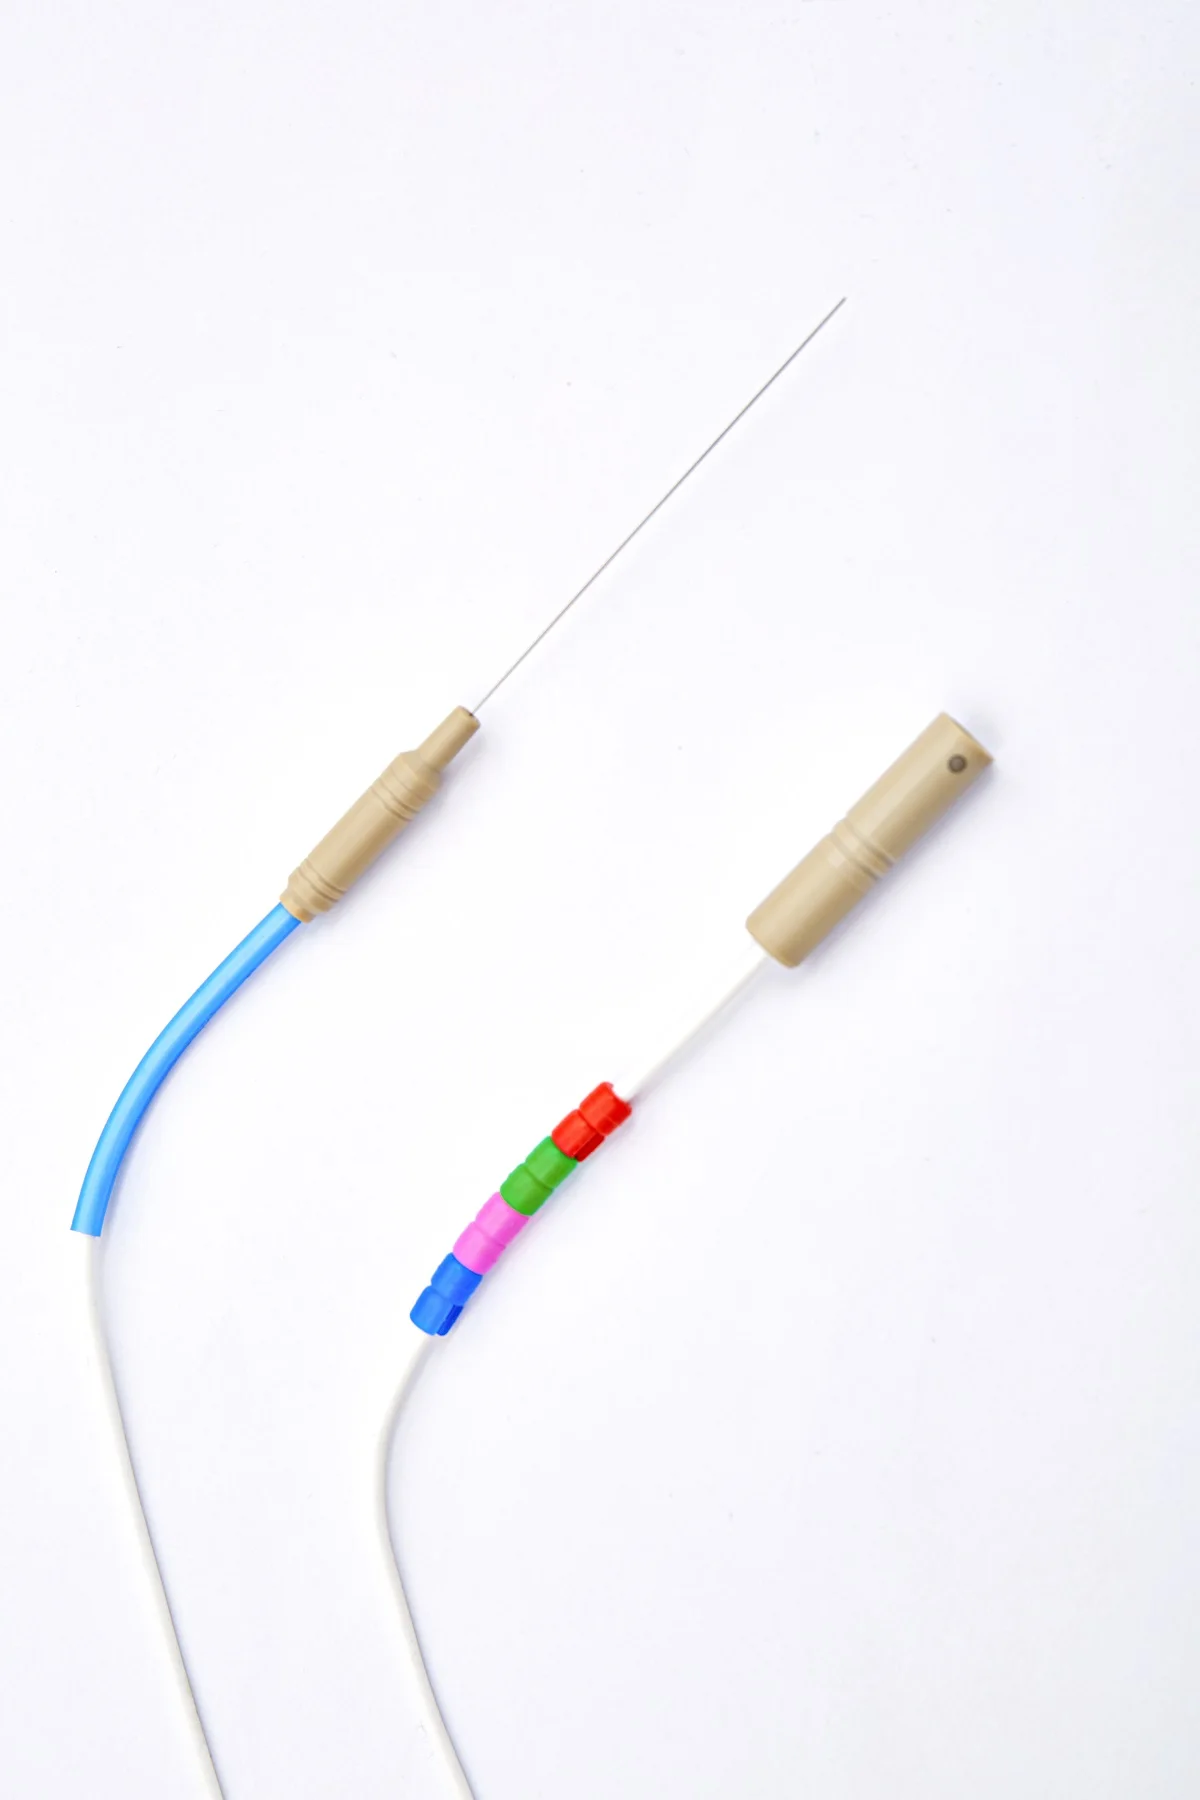 可重复使用的 ss 细射频电极射频探针可用于神经外科和骨科凝血和疼痛